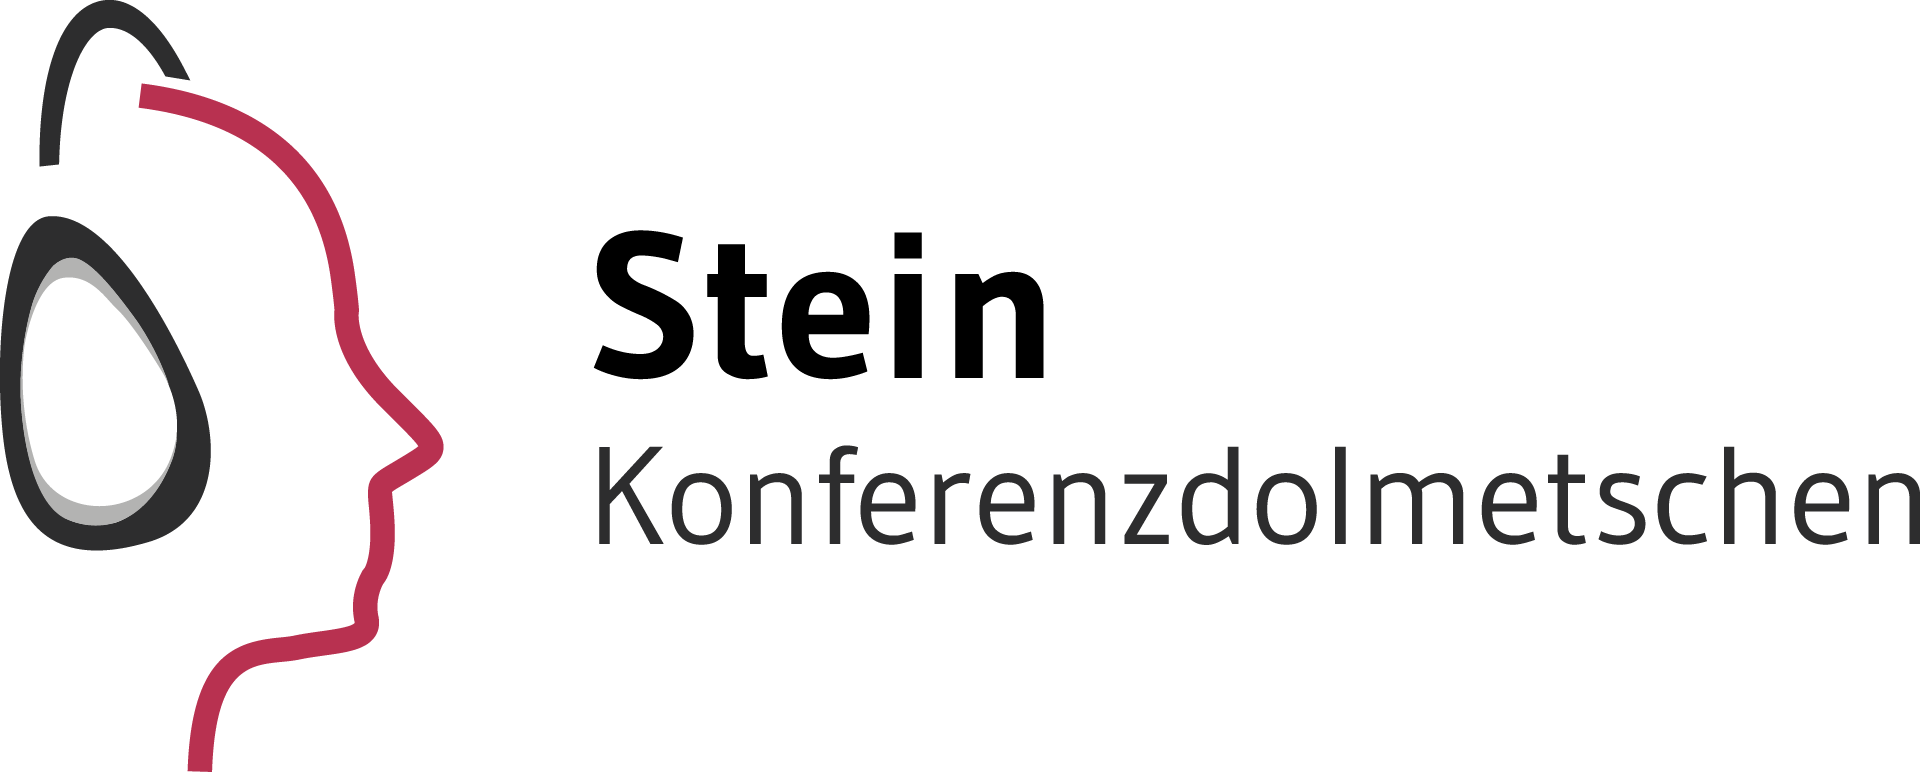 Logo Stein Konferenzdolmetschen